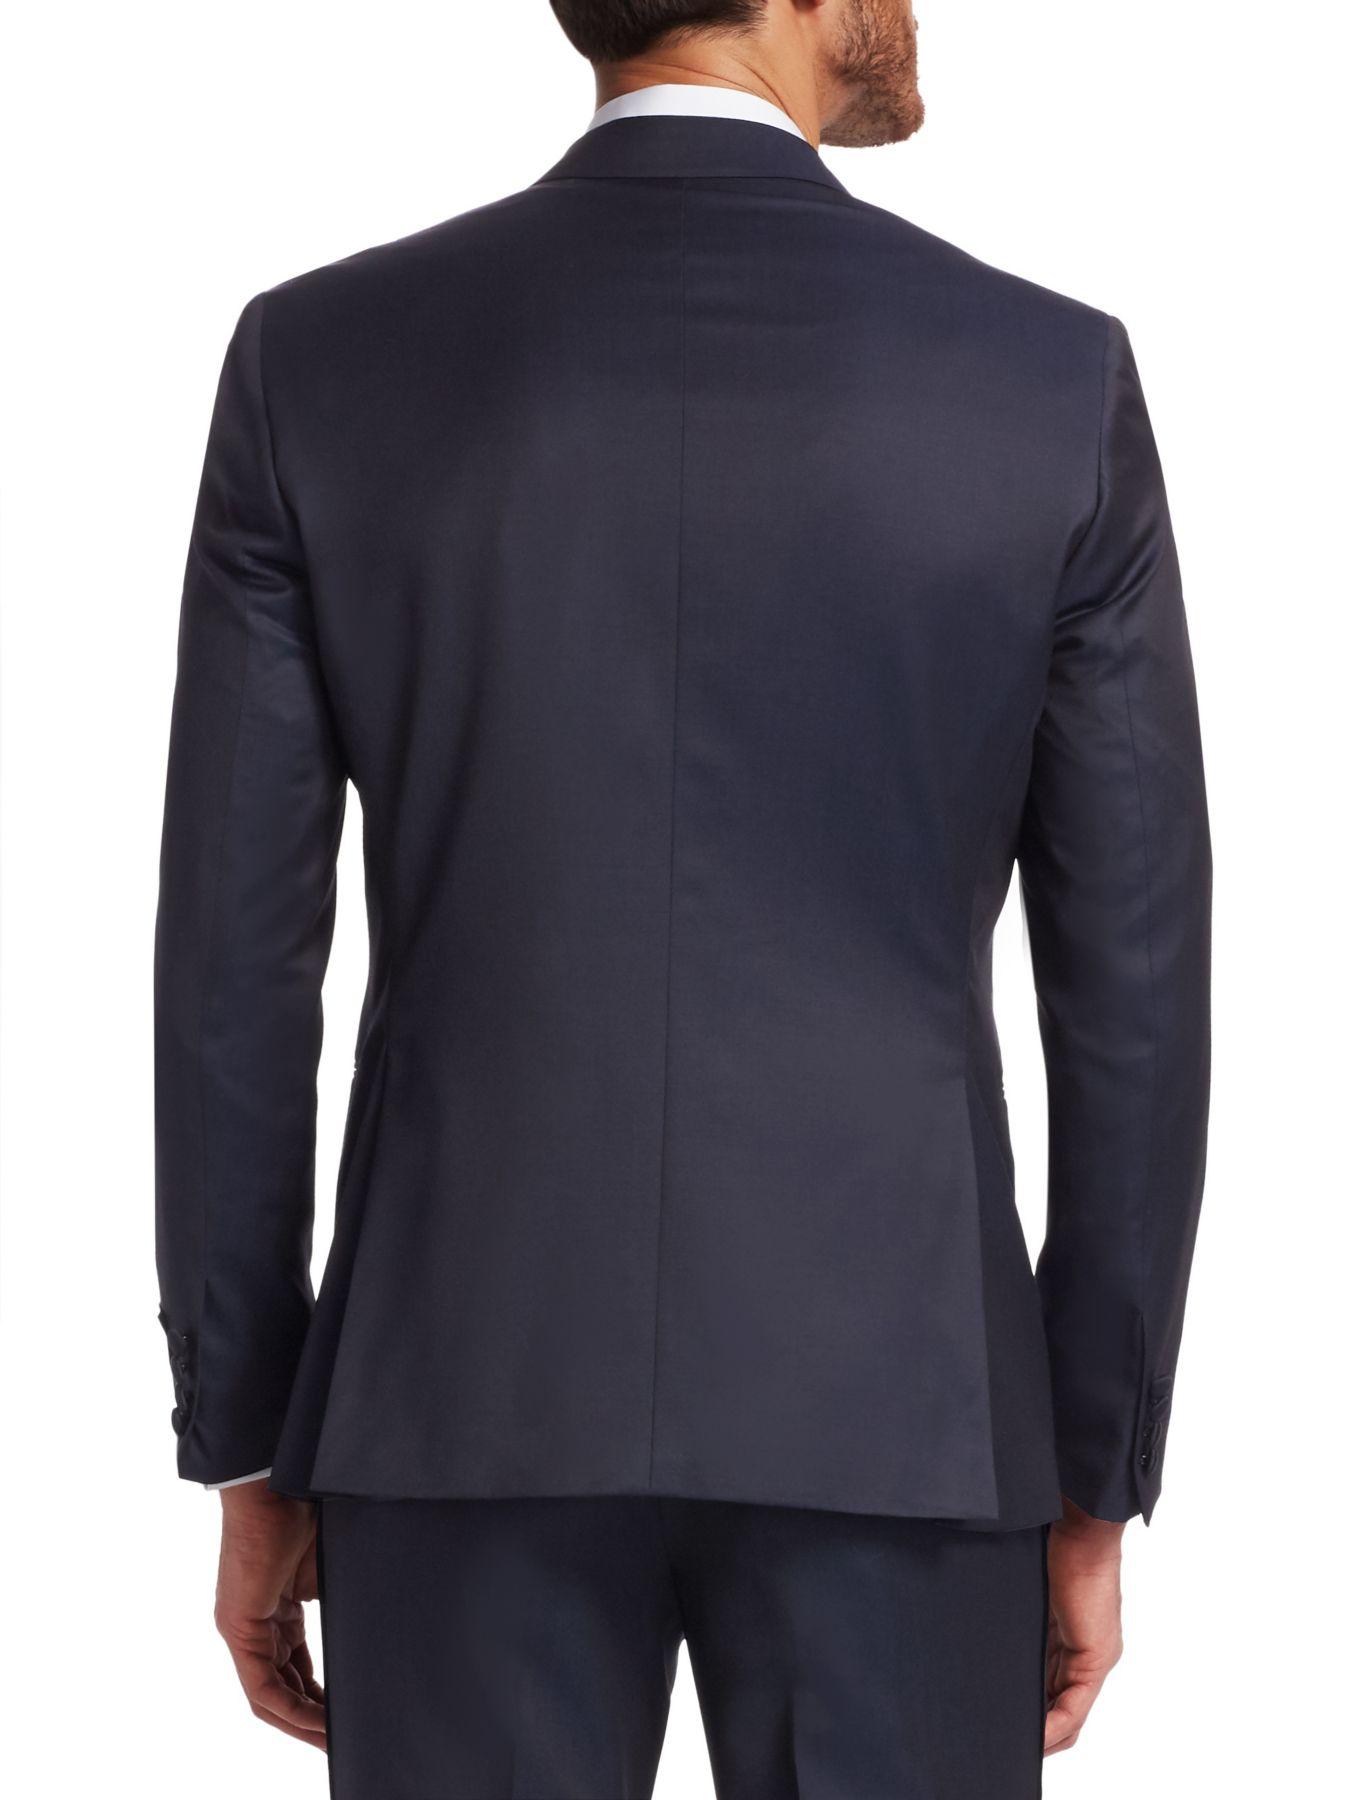 Saks Fifth Avenue Modern Wool Tuxedo Jacket in Navy (Blue) for Men - Lyst